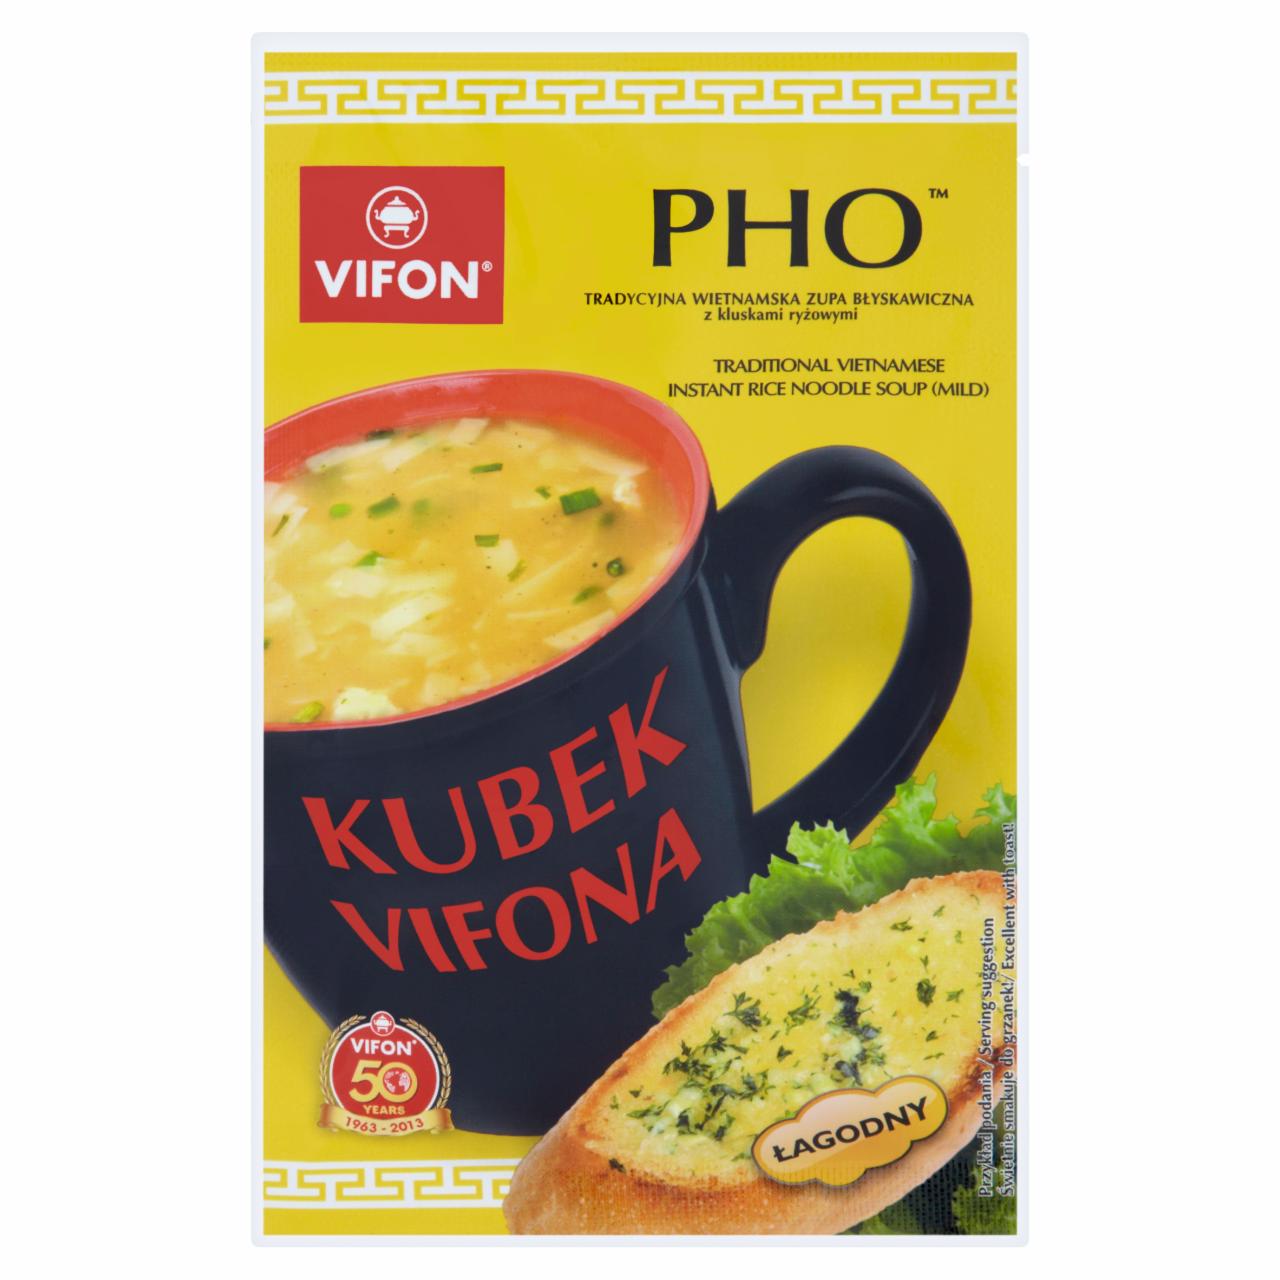 Zdjęcia - Vifon Kubek Vifona Pho Tradycyjna wietnamska zupa błyskawiczna z kluskami ryżowymi łagodna 25 g